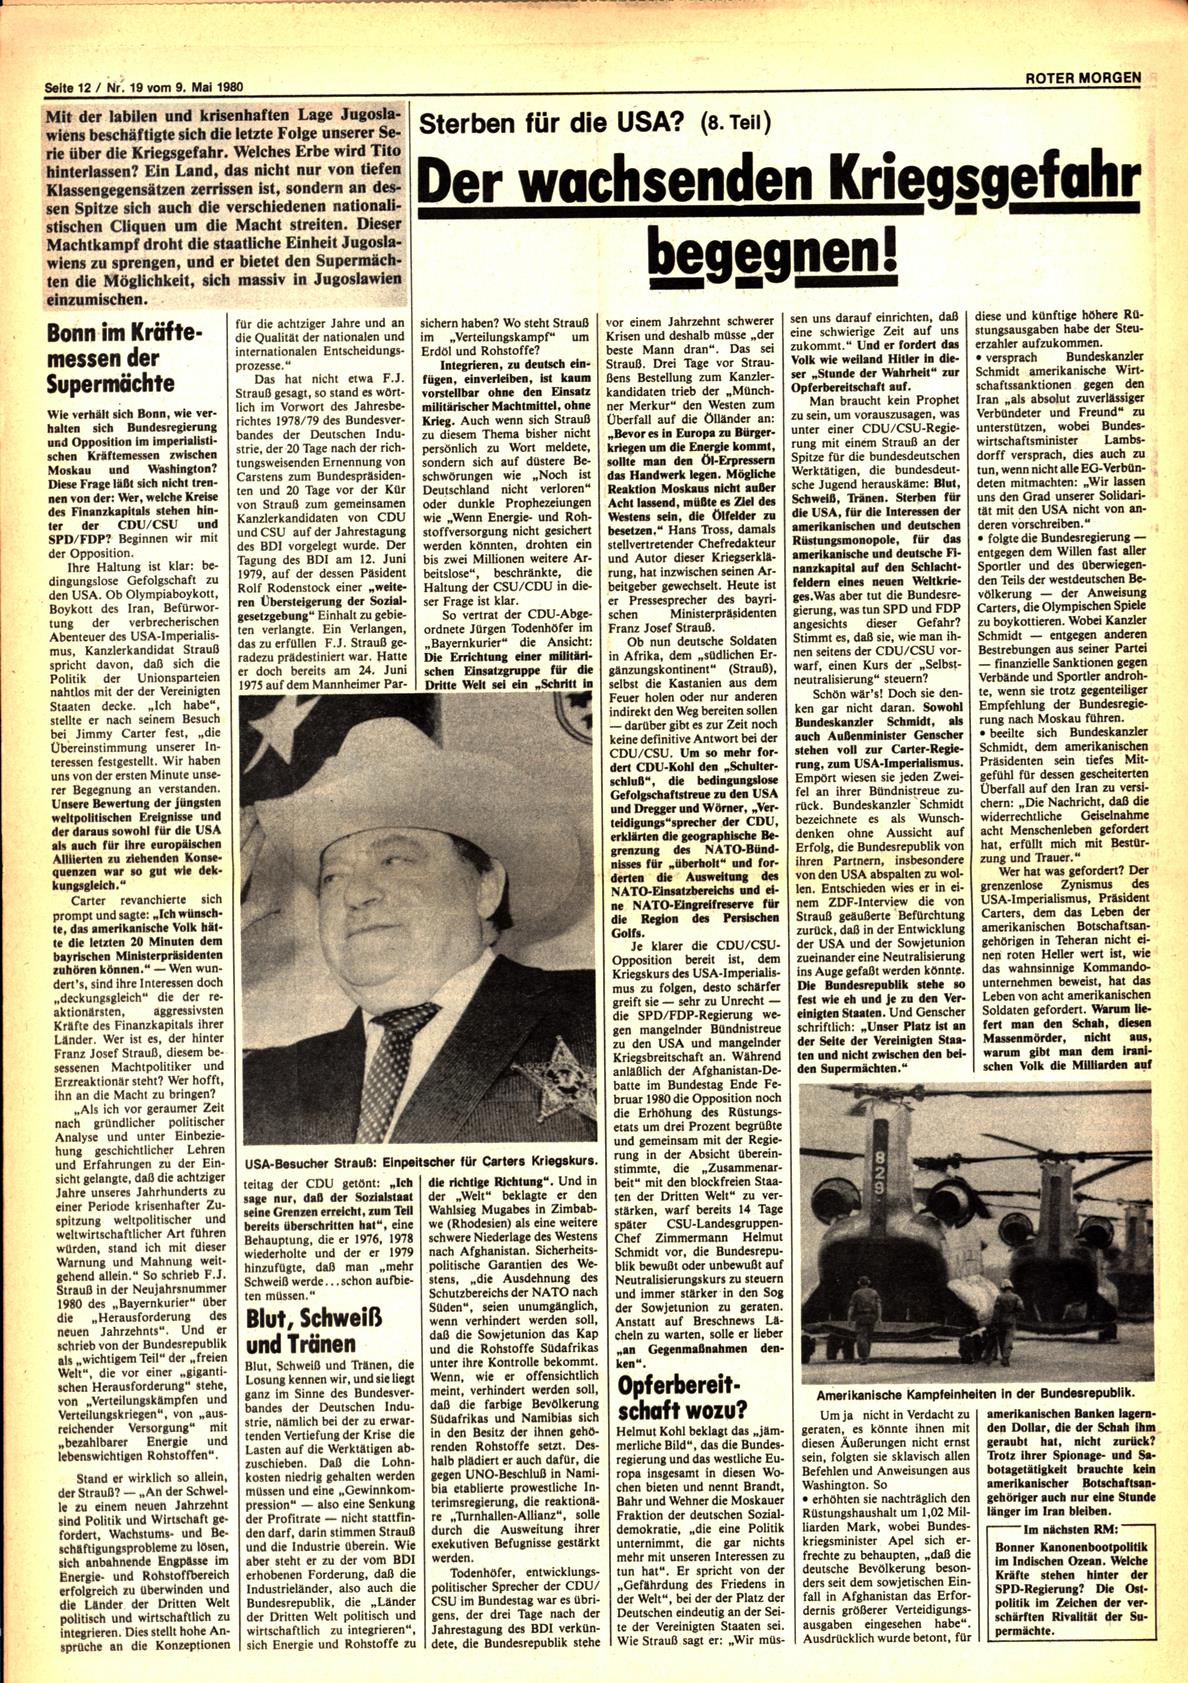 Roter Morgen, 14. Jg., 9. Mai 1980, Nr. 19, Seite 12